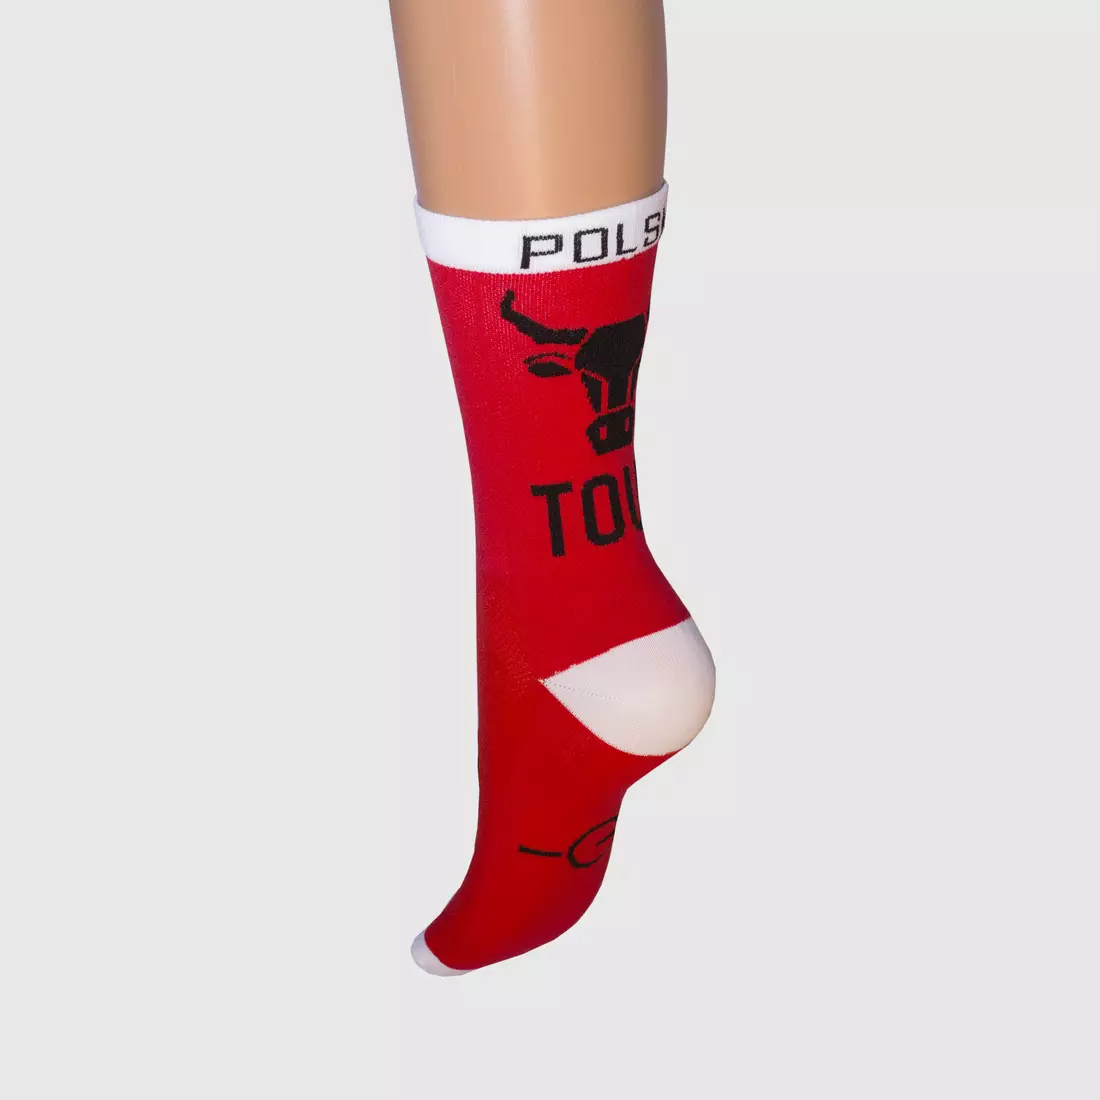 GONKA Polish Tour cycling socks